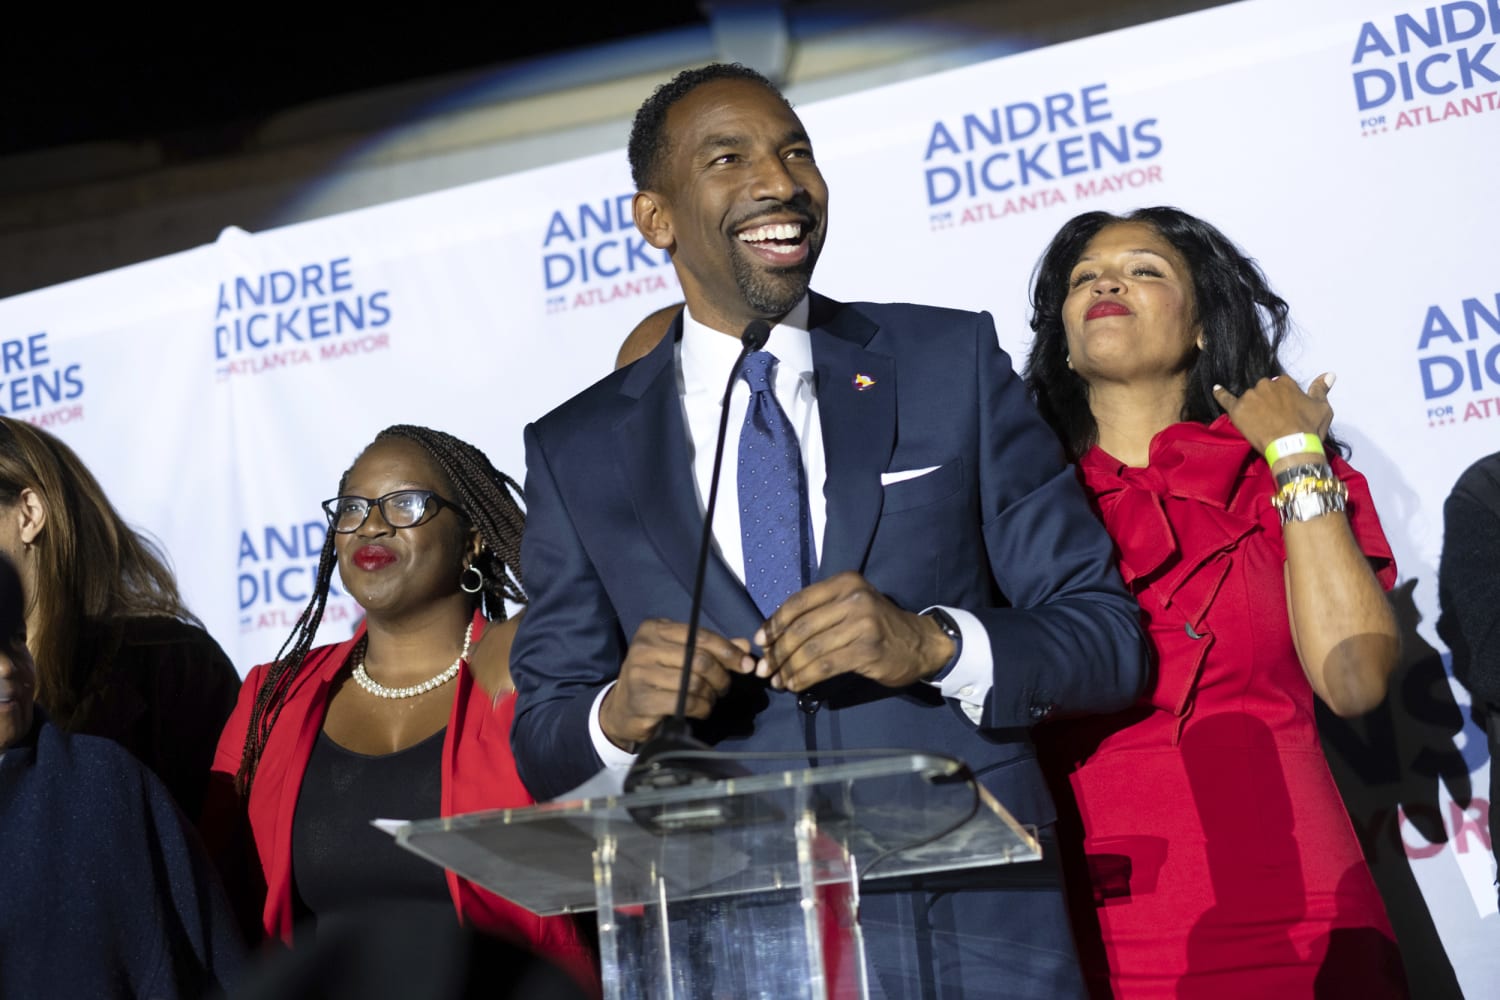 Councilman Andre Dickens wins Atlanta mayor race over Moore